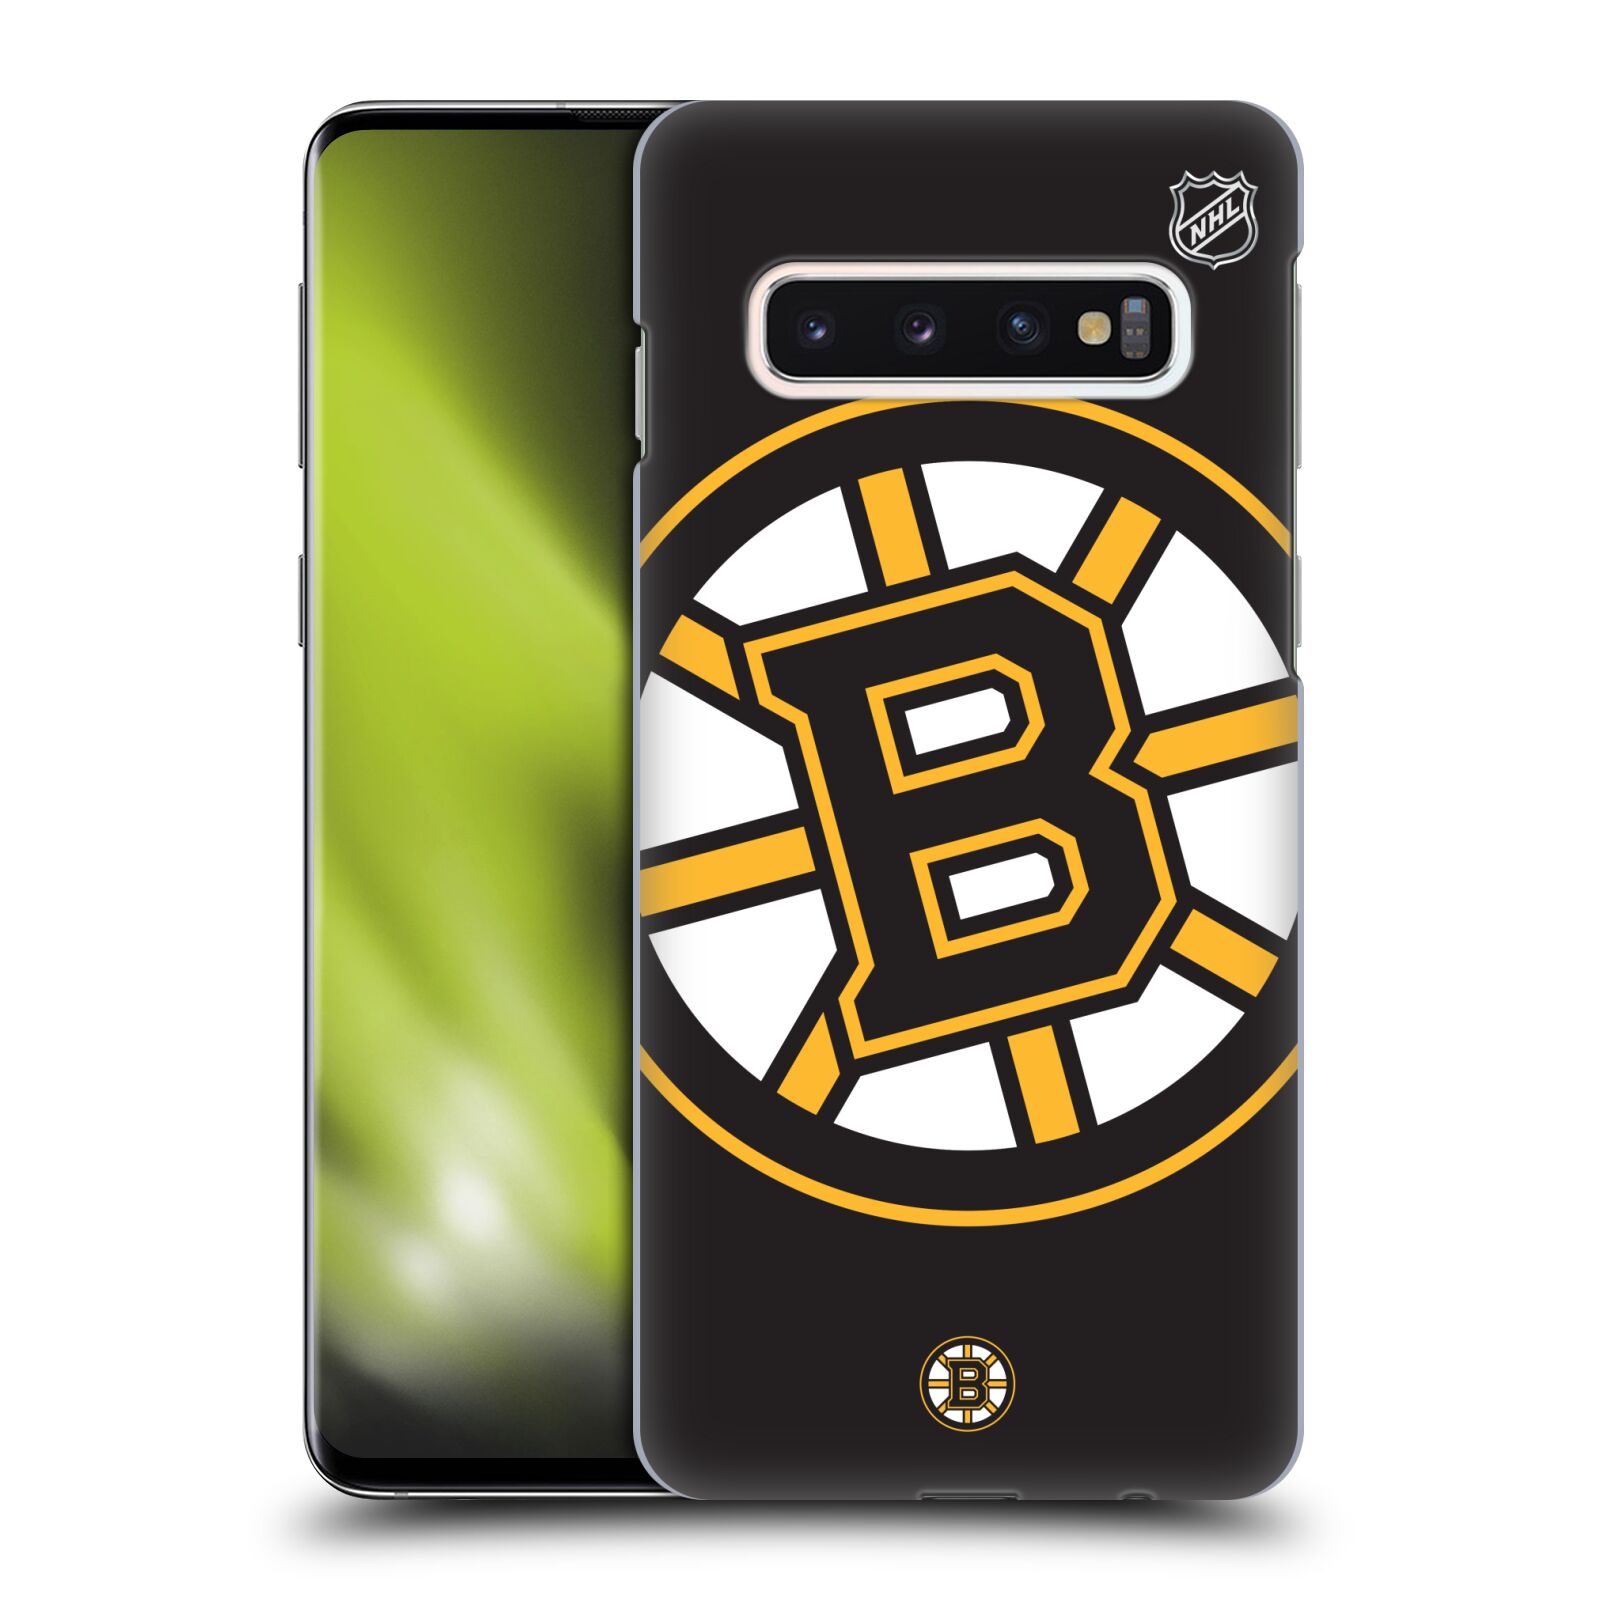 Pouzdro na mobil Samsung Galaxy S10 - HEAD CASE - Hokej NHL - Boston Bruins - velký znak